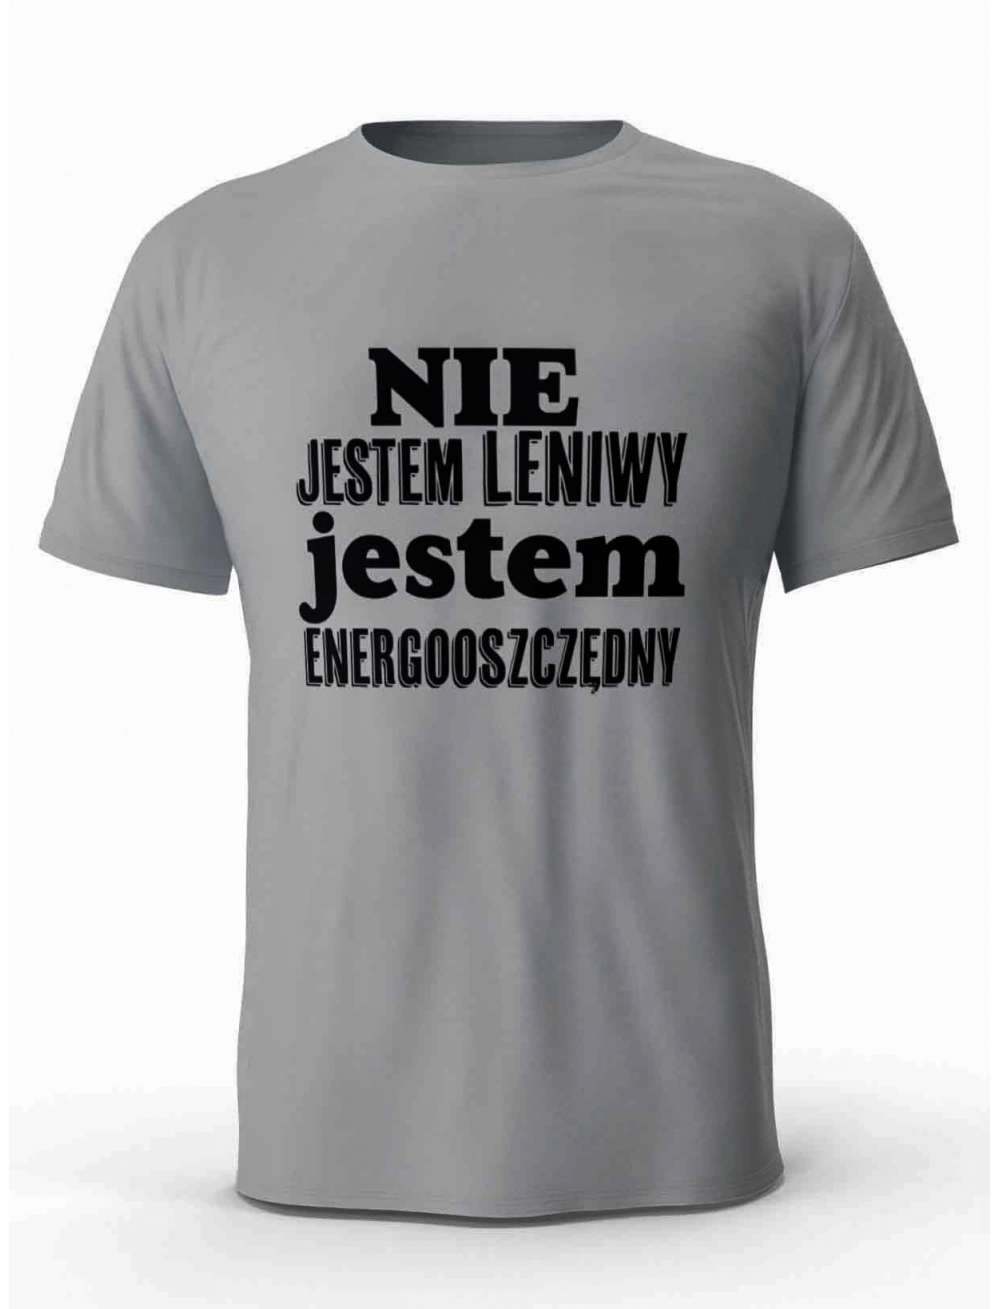 Koszulka Nie Jestem Leniwy, T-shirt Męski, Prezent